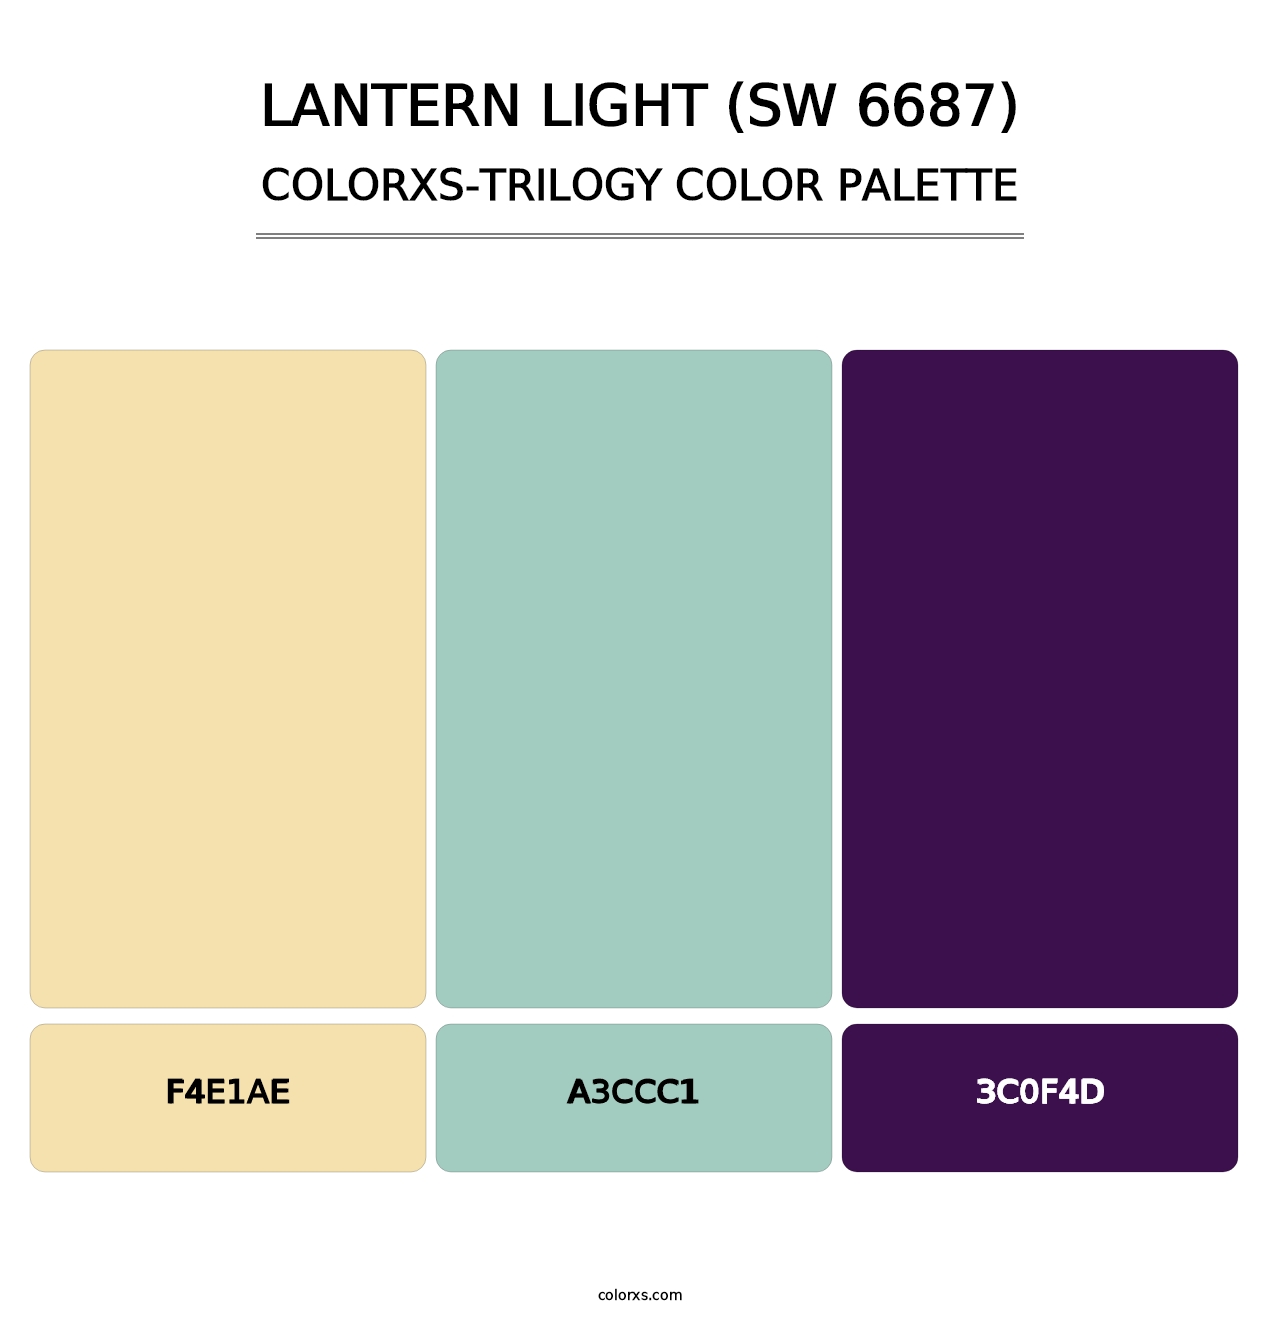 Lantern Light (SW 6687) - Colorxs Trilogy Palette